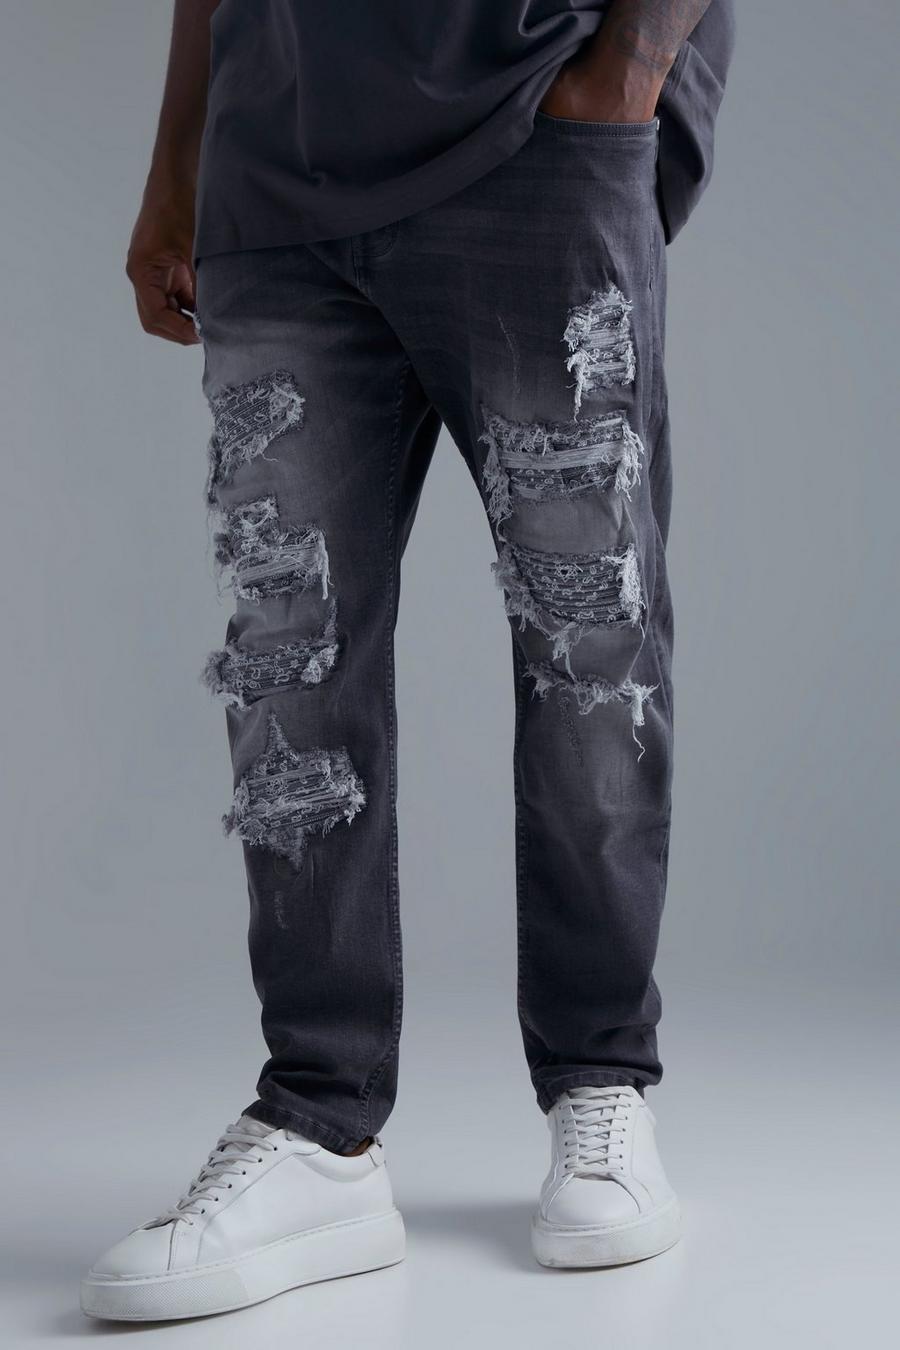 אפור gris סקיני ג'ינס עם דוגמת בנדנה, קרעים וטלאים בצביעה כפולה למידות גדולות